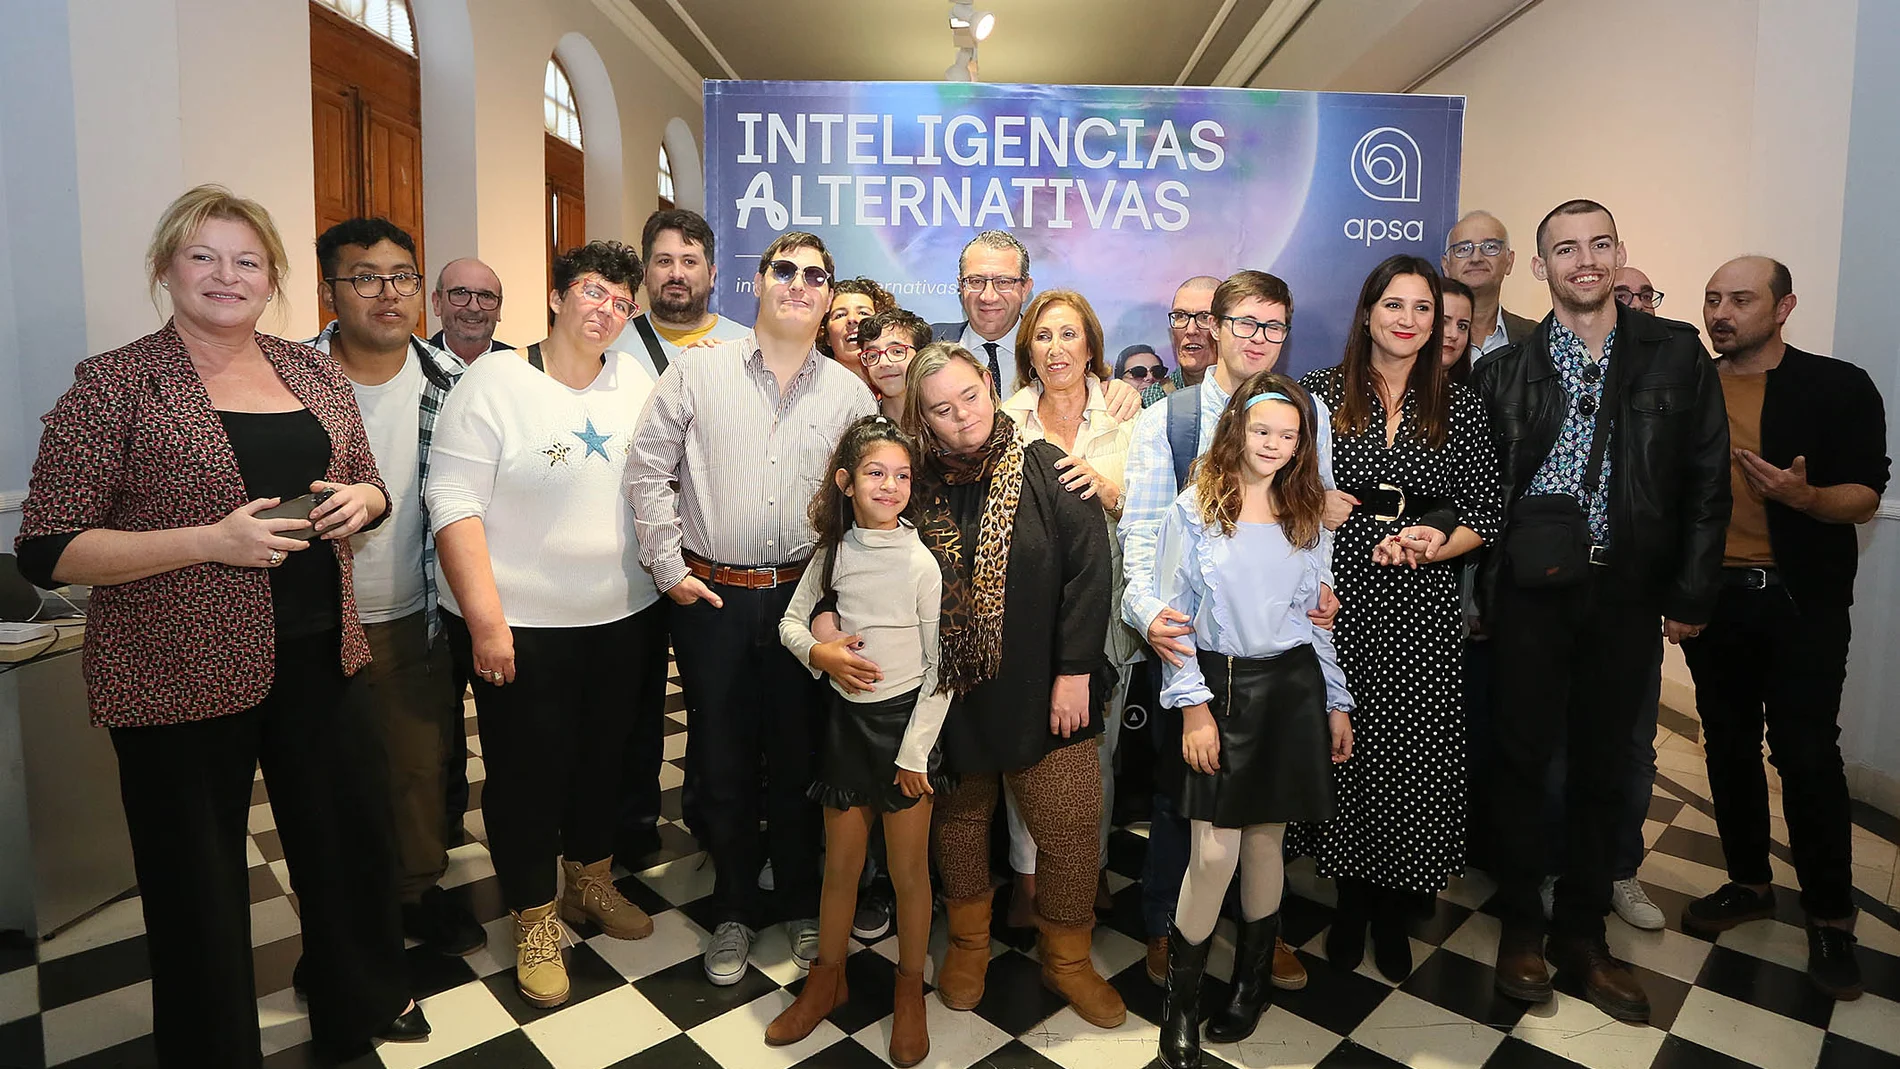 Acto de presentación hoy en Alicante de la campaña Inteligencias Alternativas.